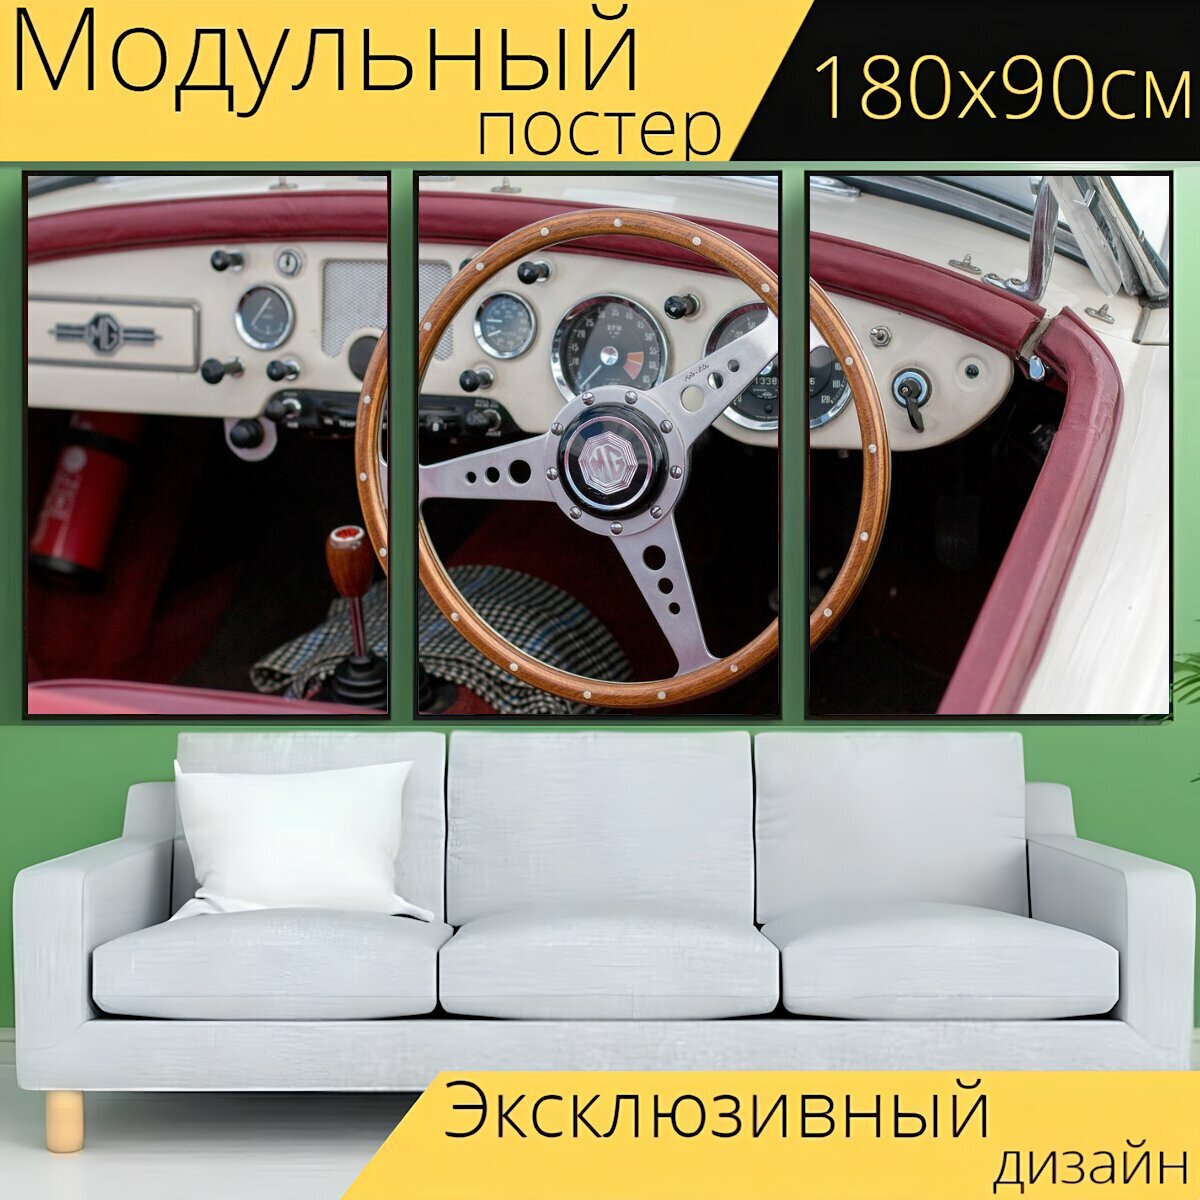 Модульный постер "Рулевое управление, колесо, машина" 180 x 90 см. для интерьера